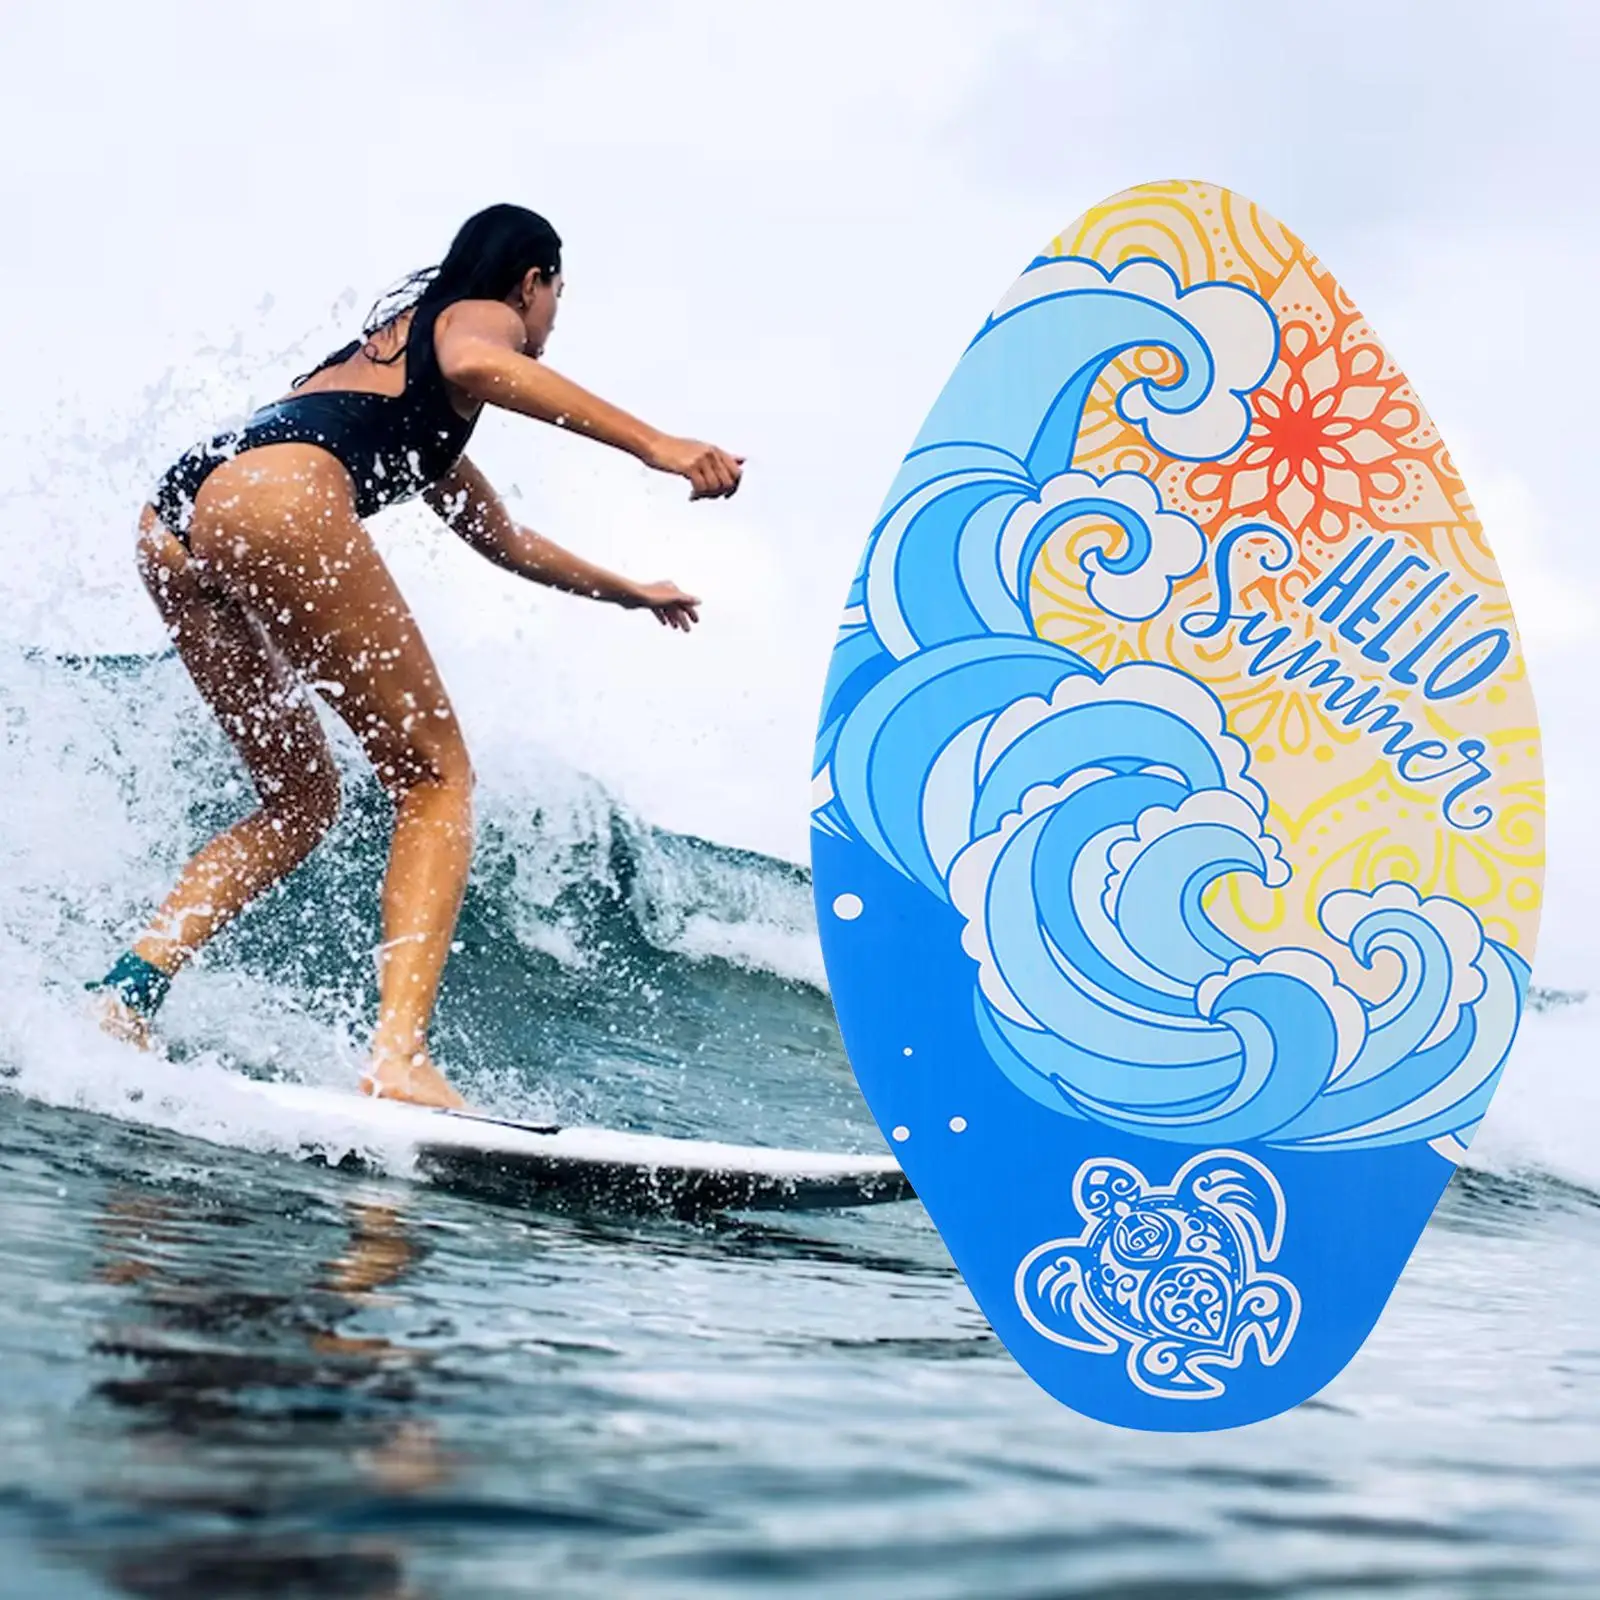 Skimboard Durable Universal Beginners Skim Board Small Surfboard Surf Board for Kids Men Women Teenagers Unisex Beach Toys